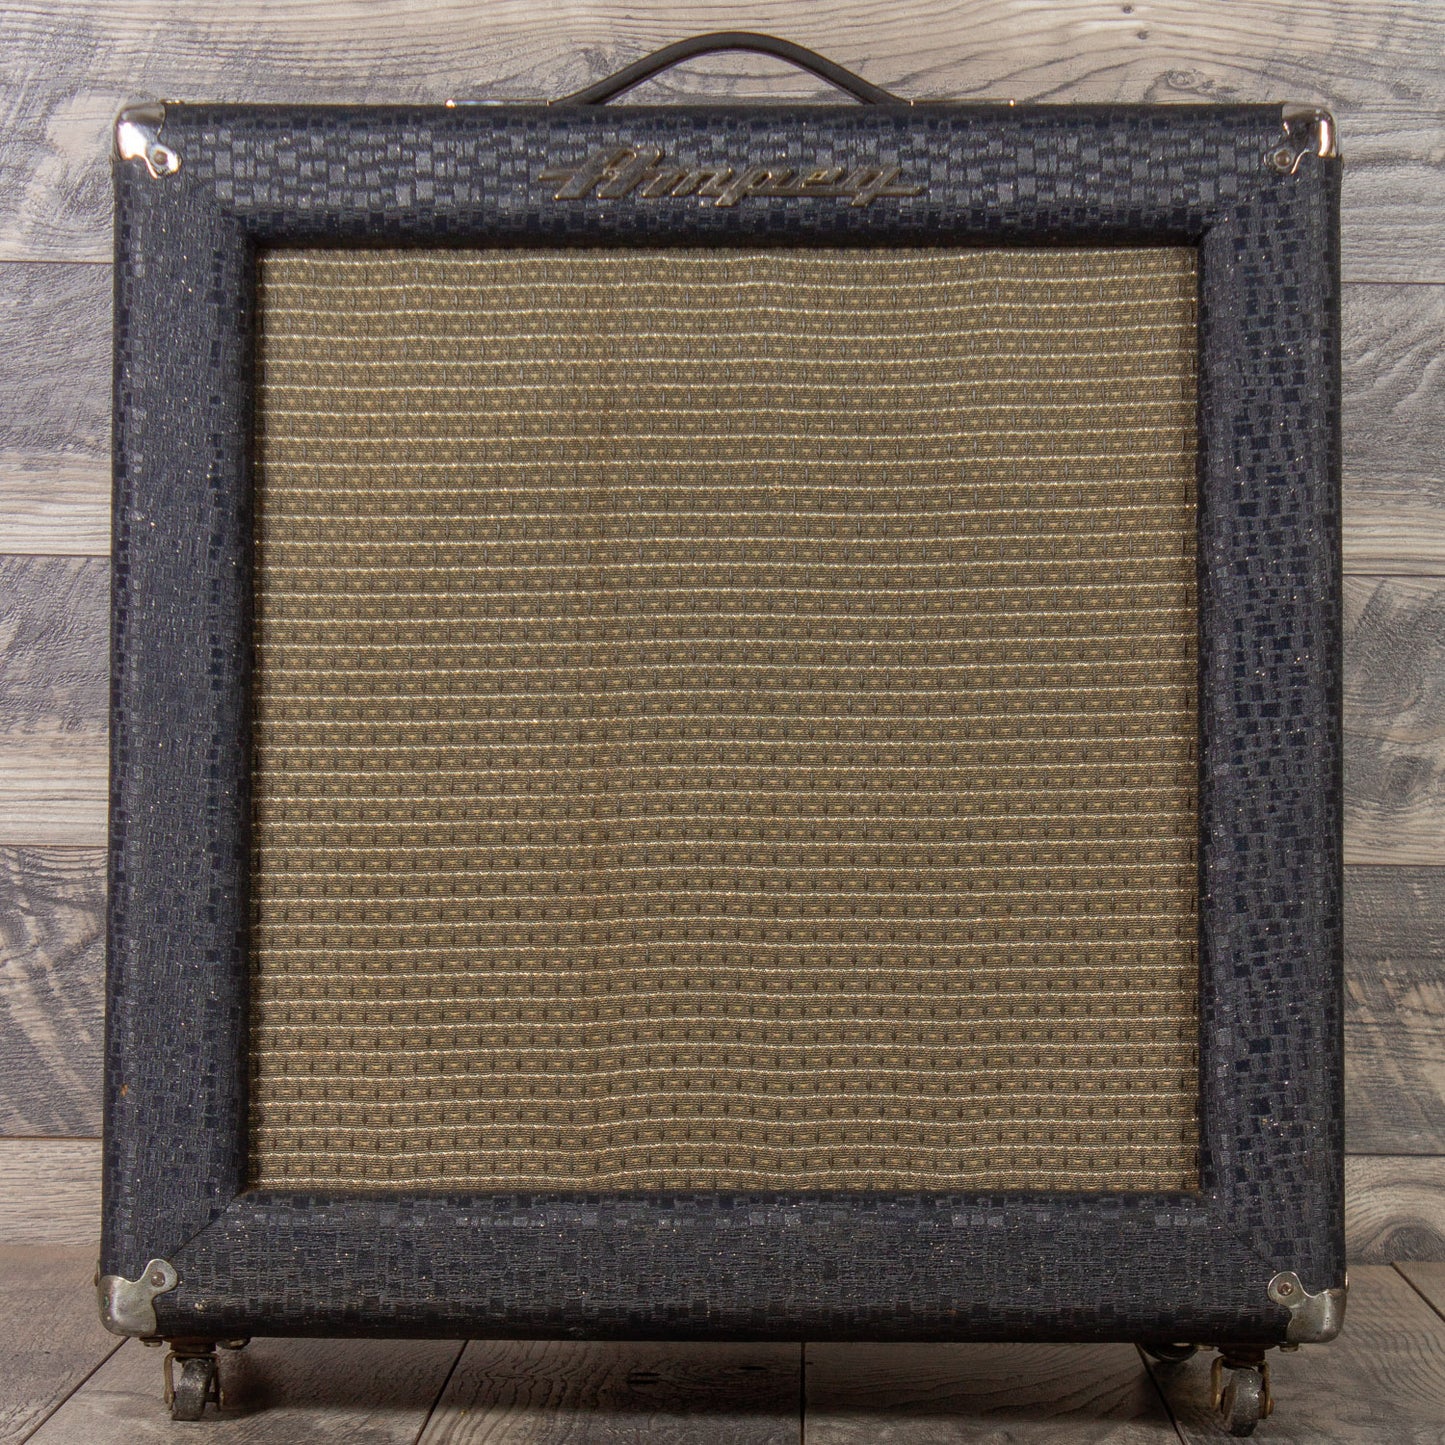 1961 Ampeg M-15 Big M 20w Amplifier